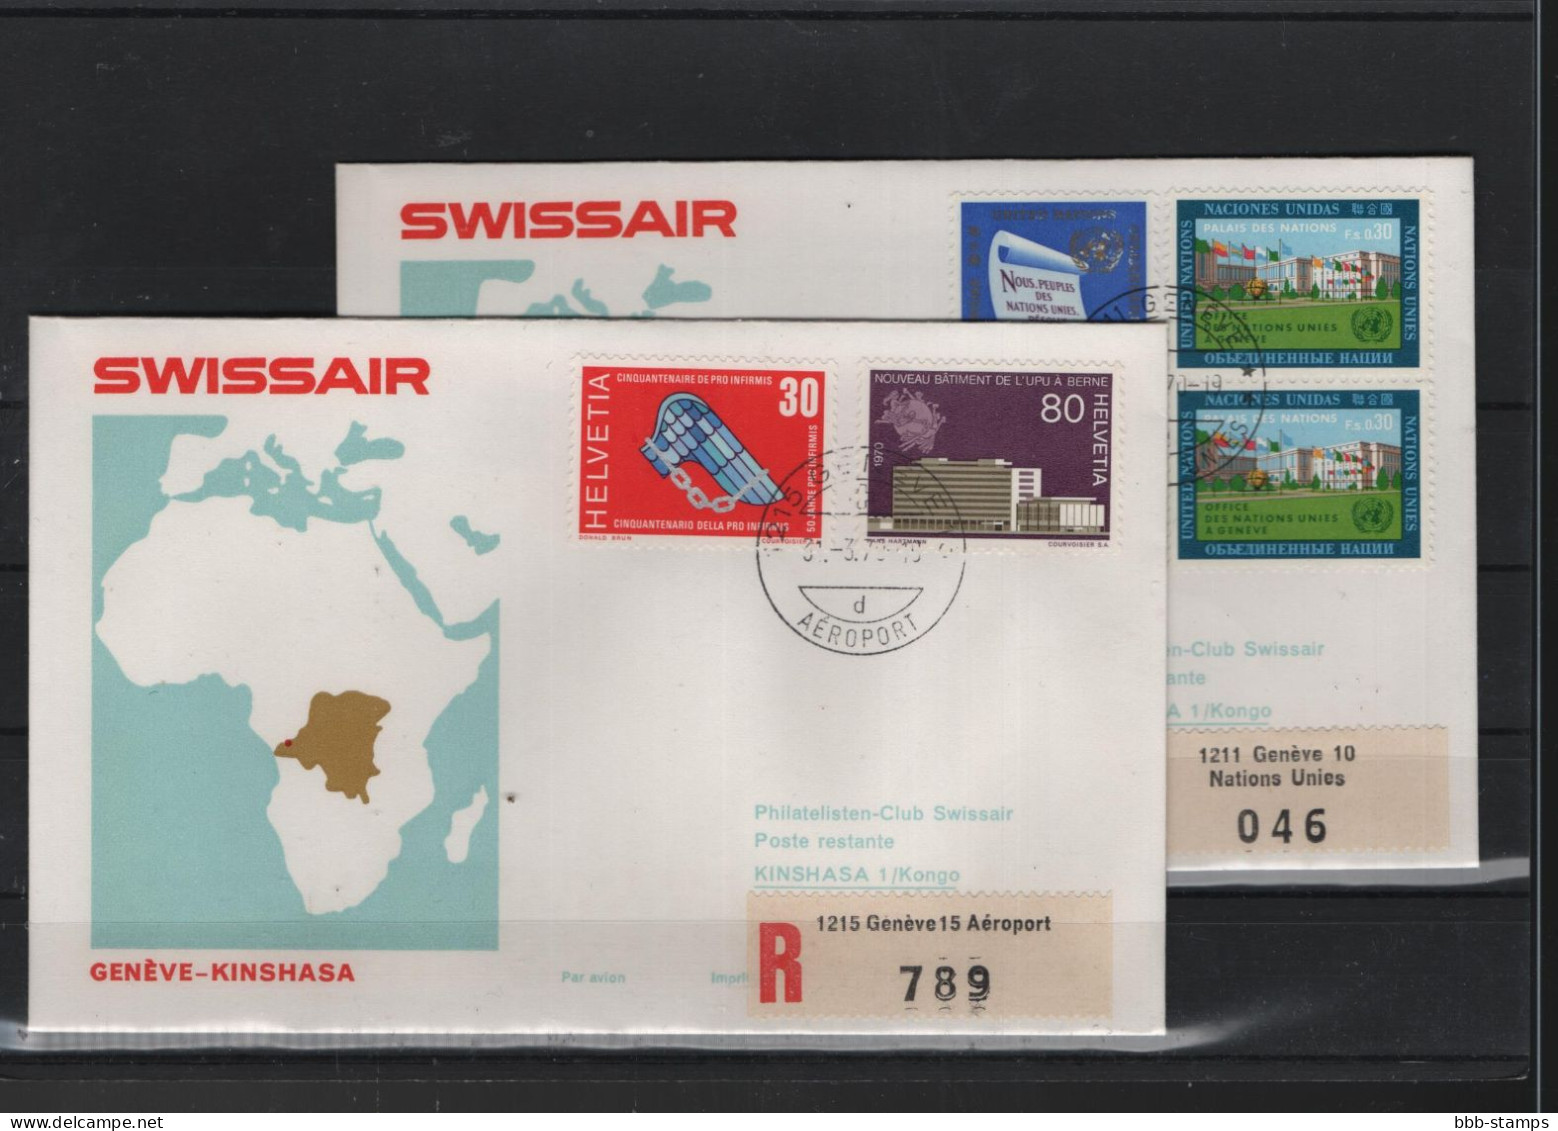 Schweiz Luftpost FFC Swissair 31.3.1970 Zürich - Kinshasa VV - Premiers Vols